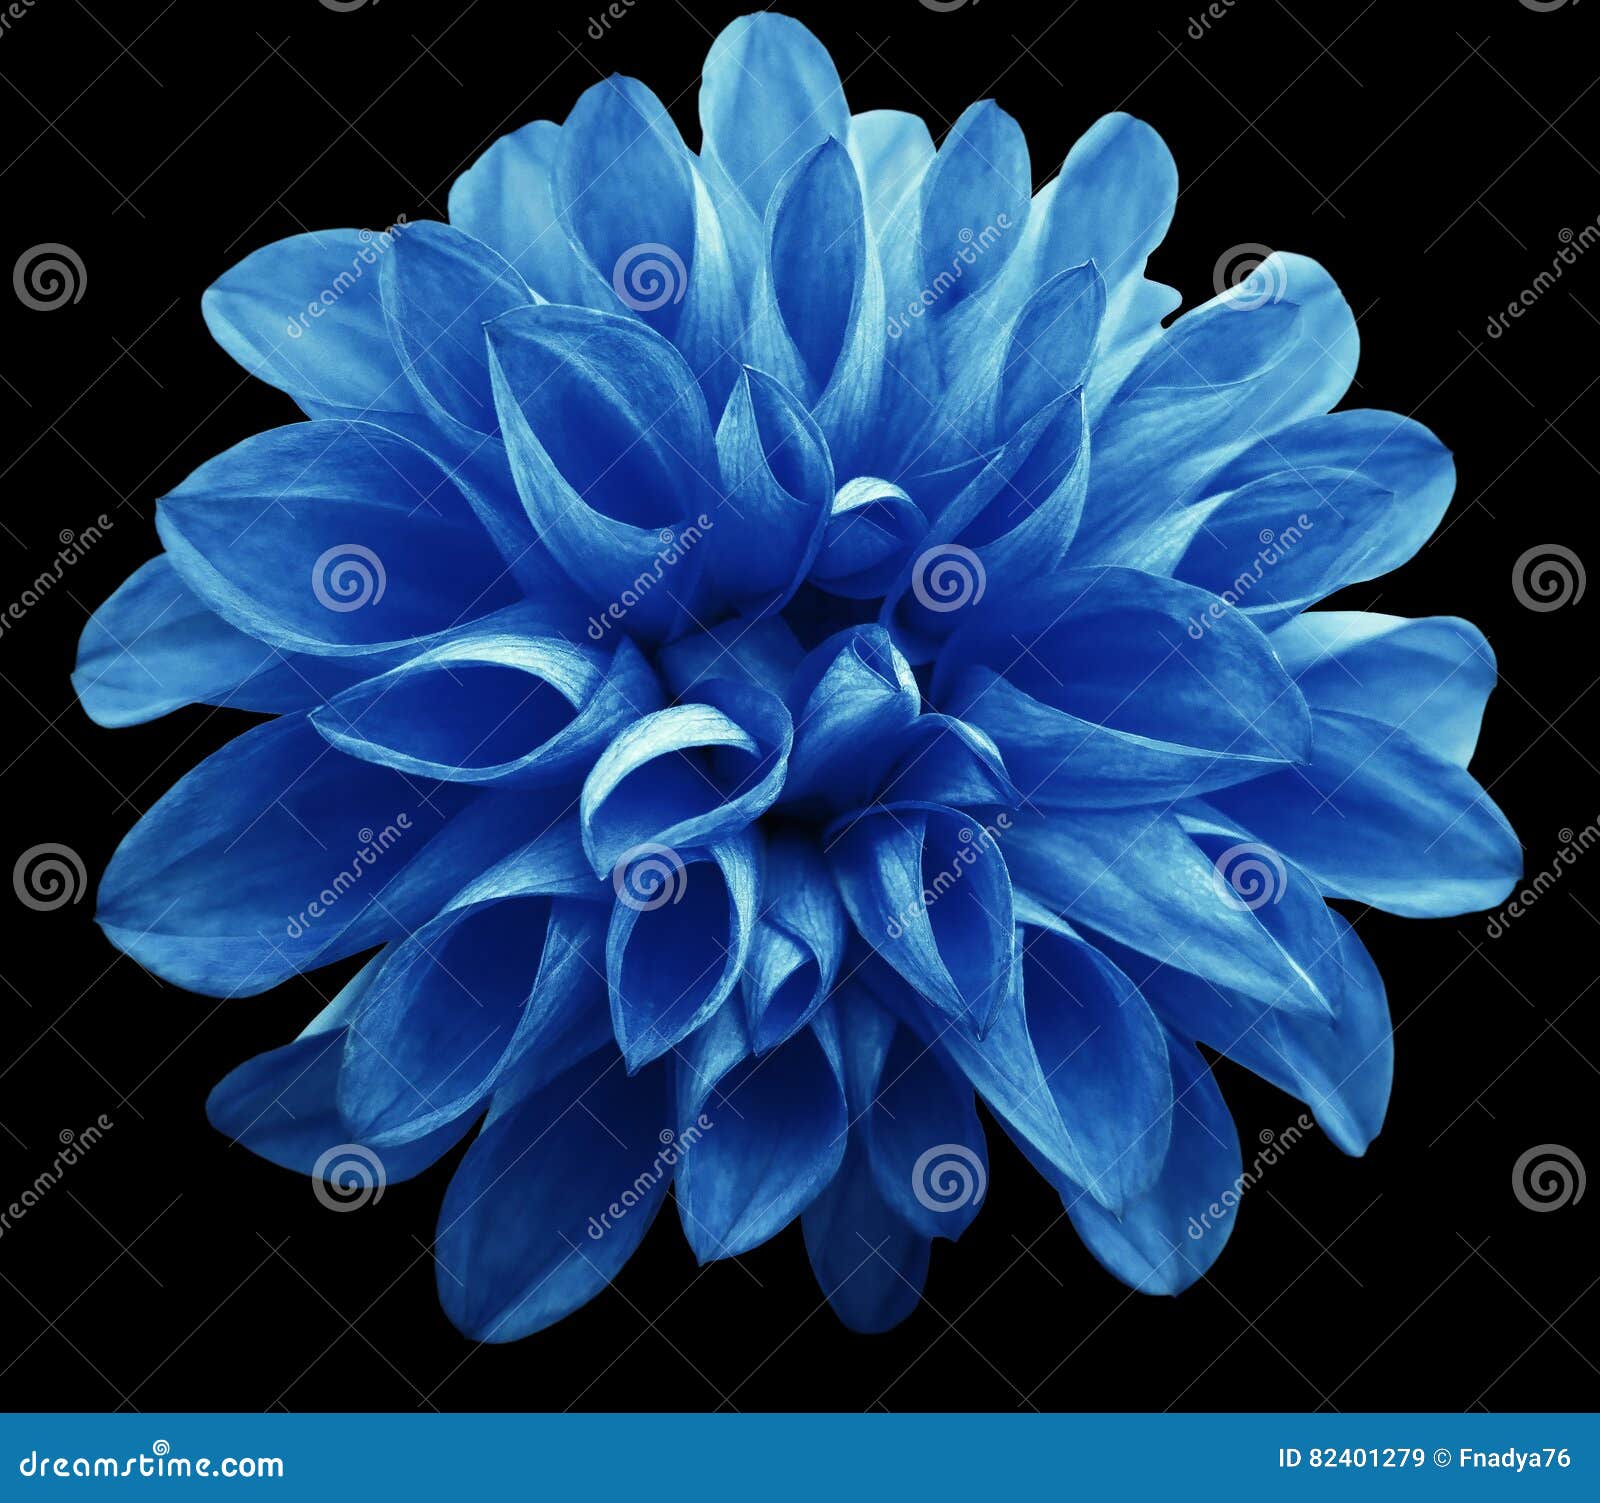 La Dalia Azul Clara De La Flor Aislada En Fondo Negro No Es Ninguna Sombra  Imagen de archivo - Imagen de exterior, belleza: 82401279